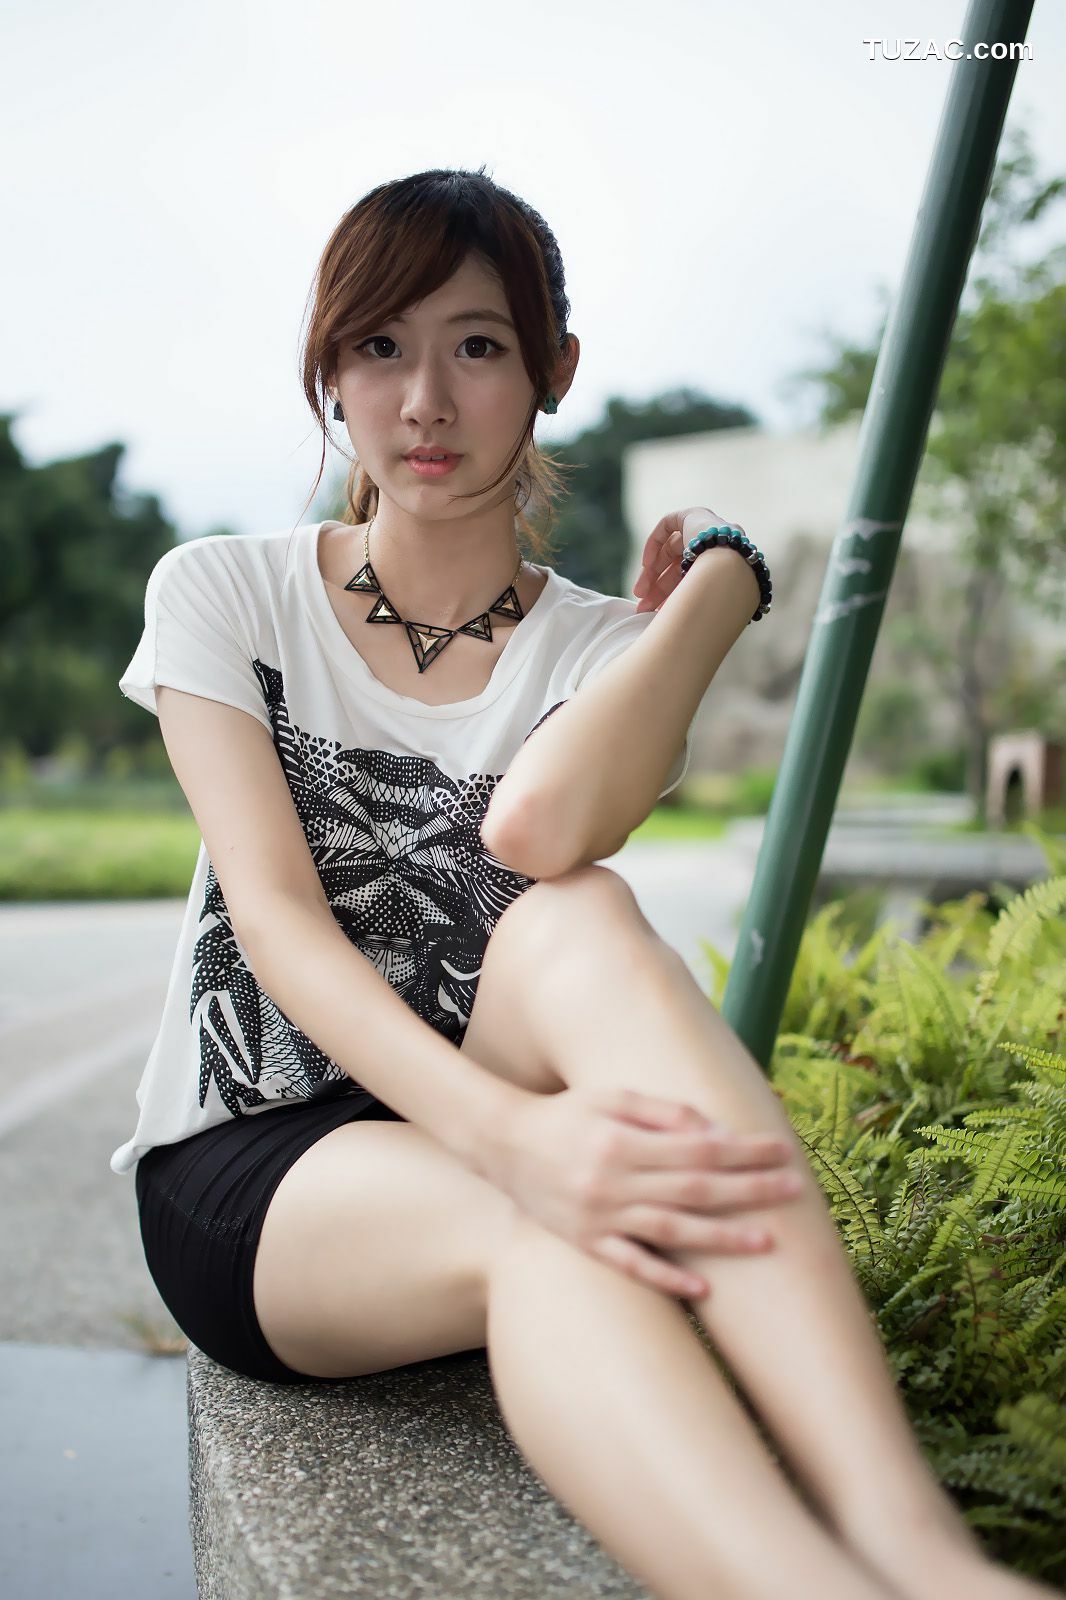 台湾正妹_台湾模特Queena/林茉晶《公园外拍》写真集